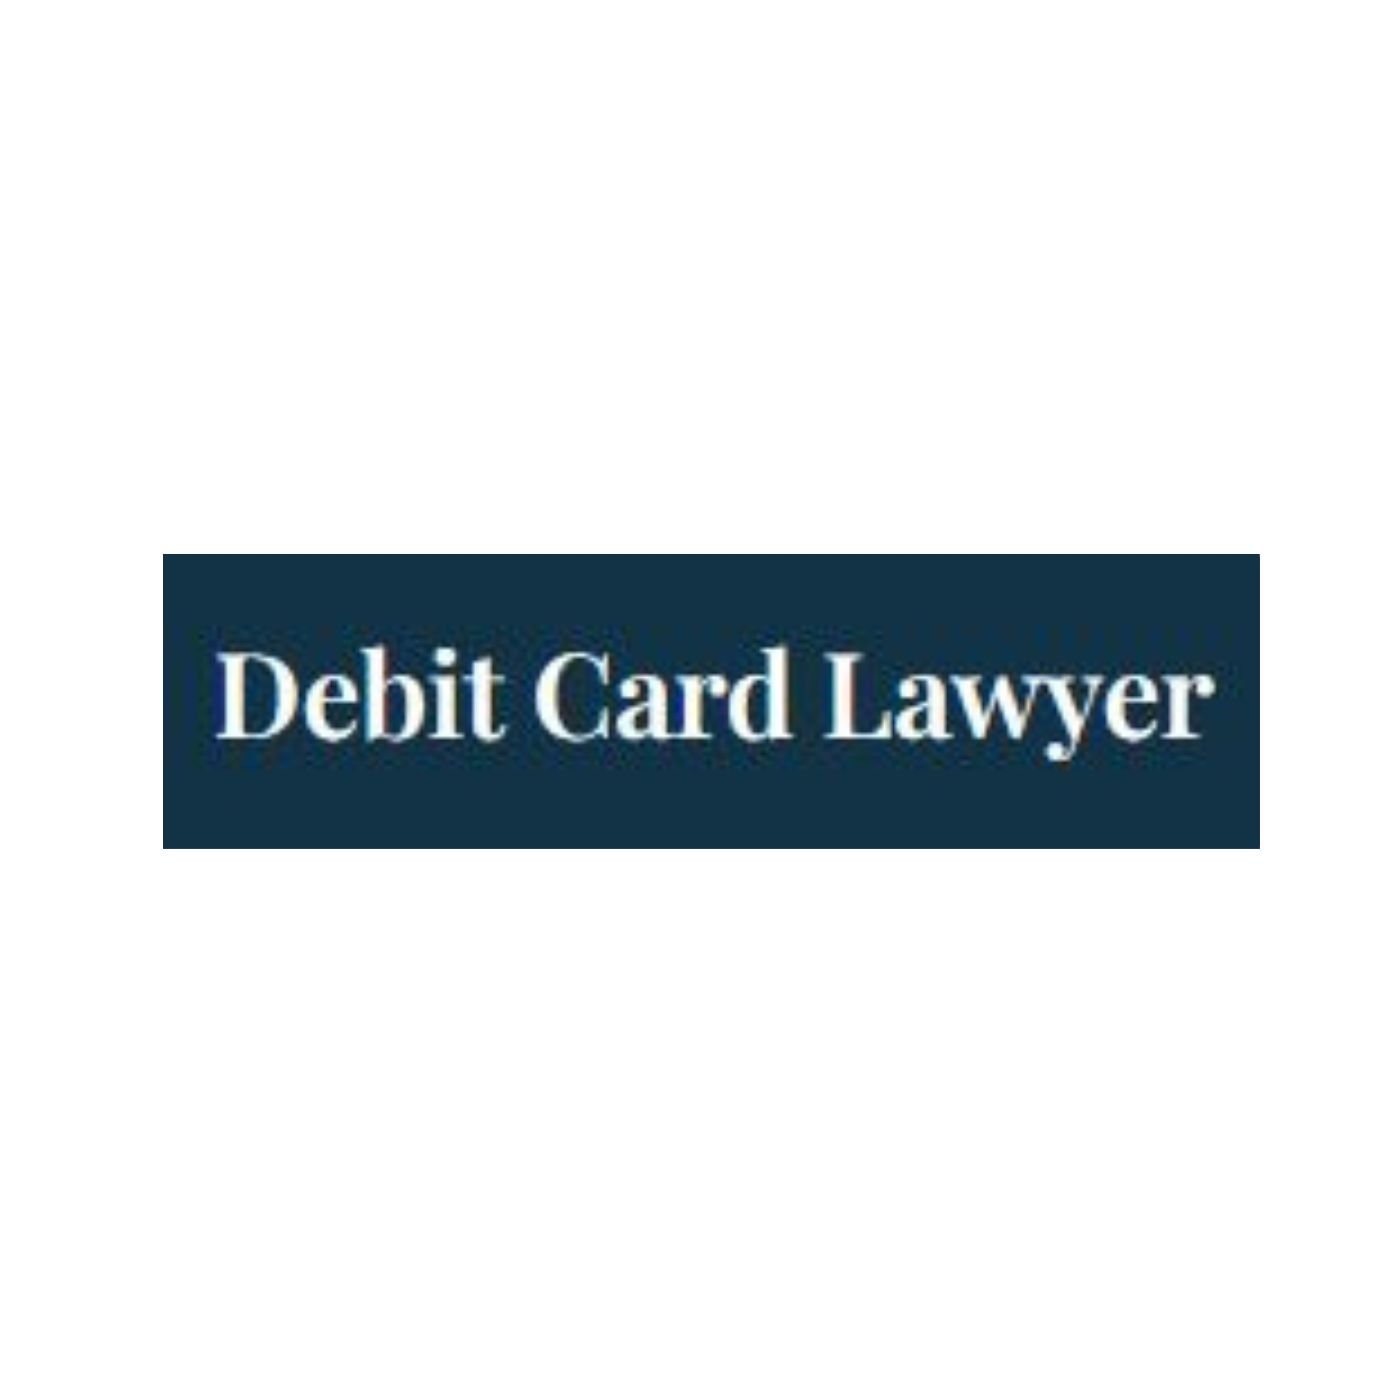 Debit Card Lawyer'